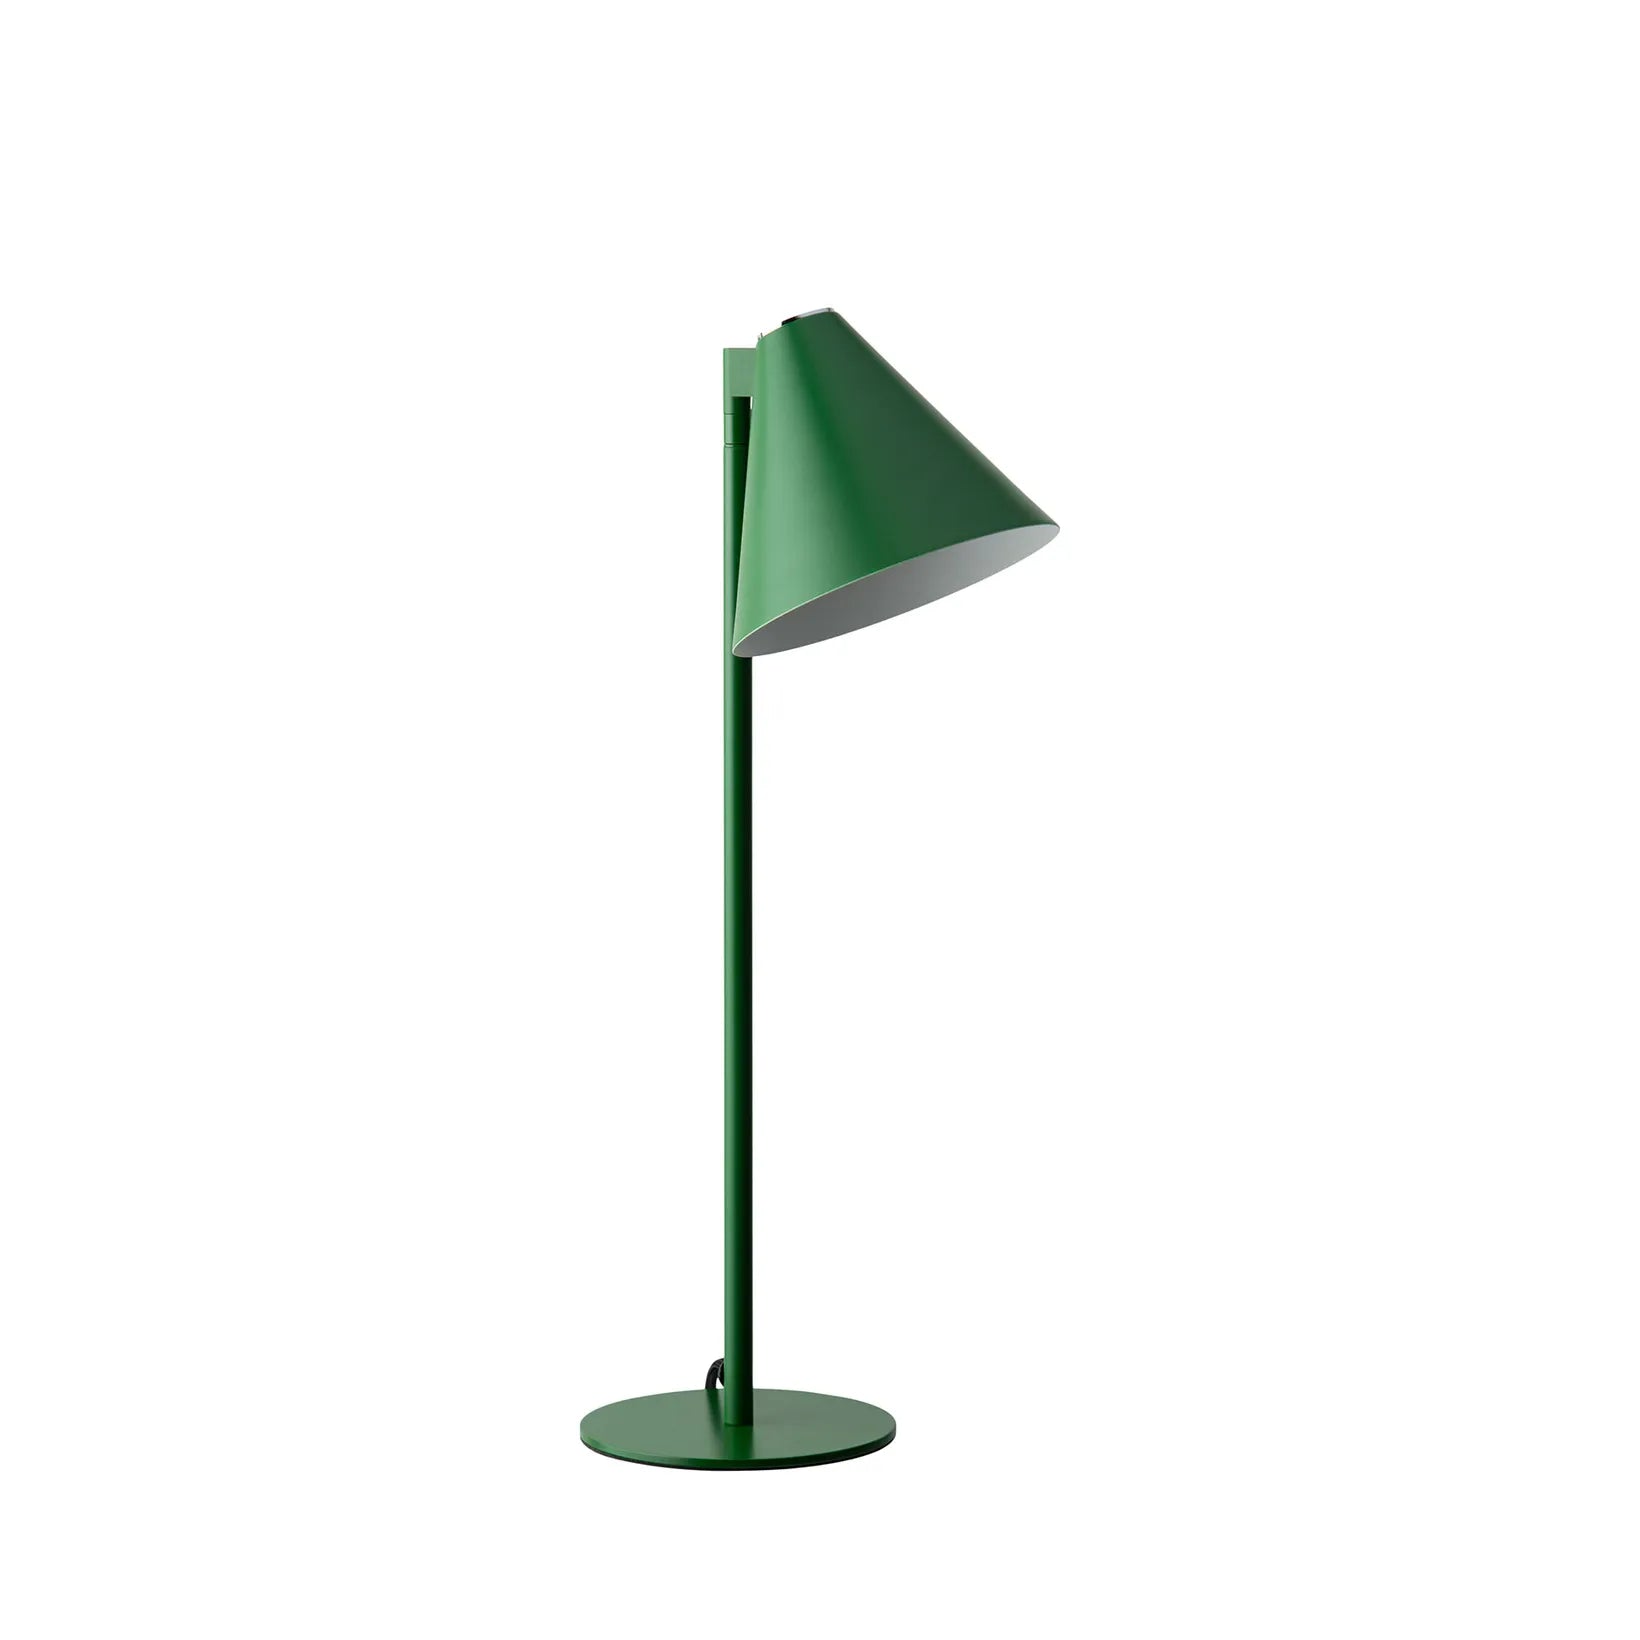 Turn Tischlampe Grün H: 53 cm - Grün - Sinnerup von Sinnerup